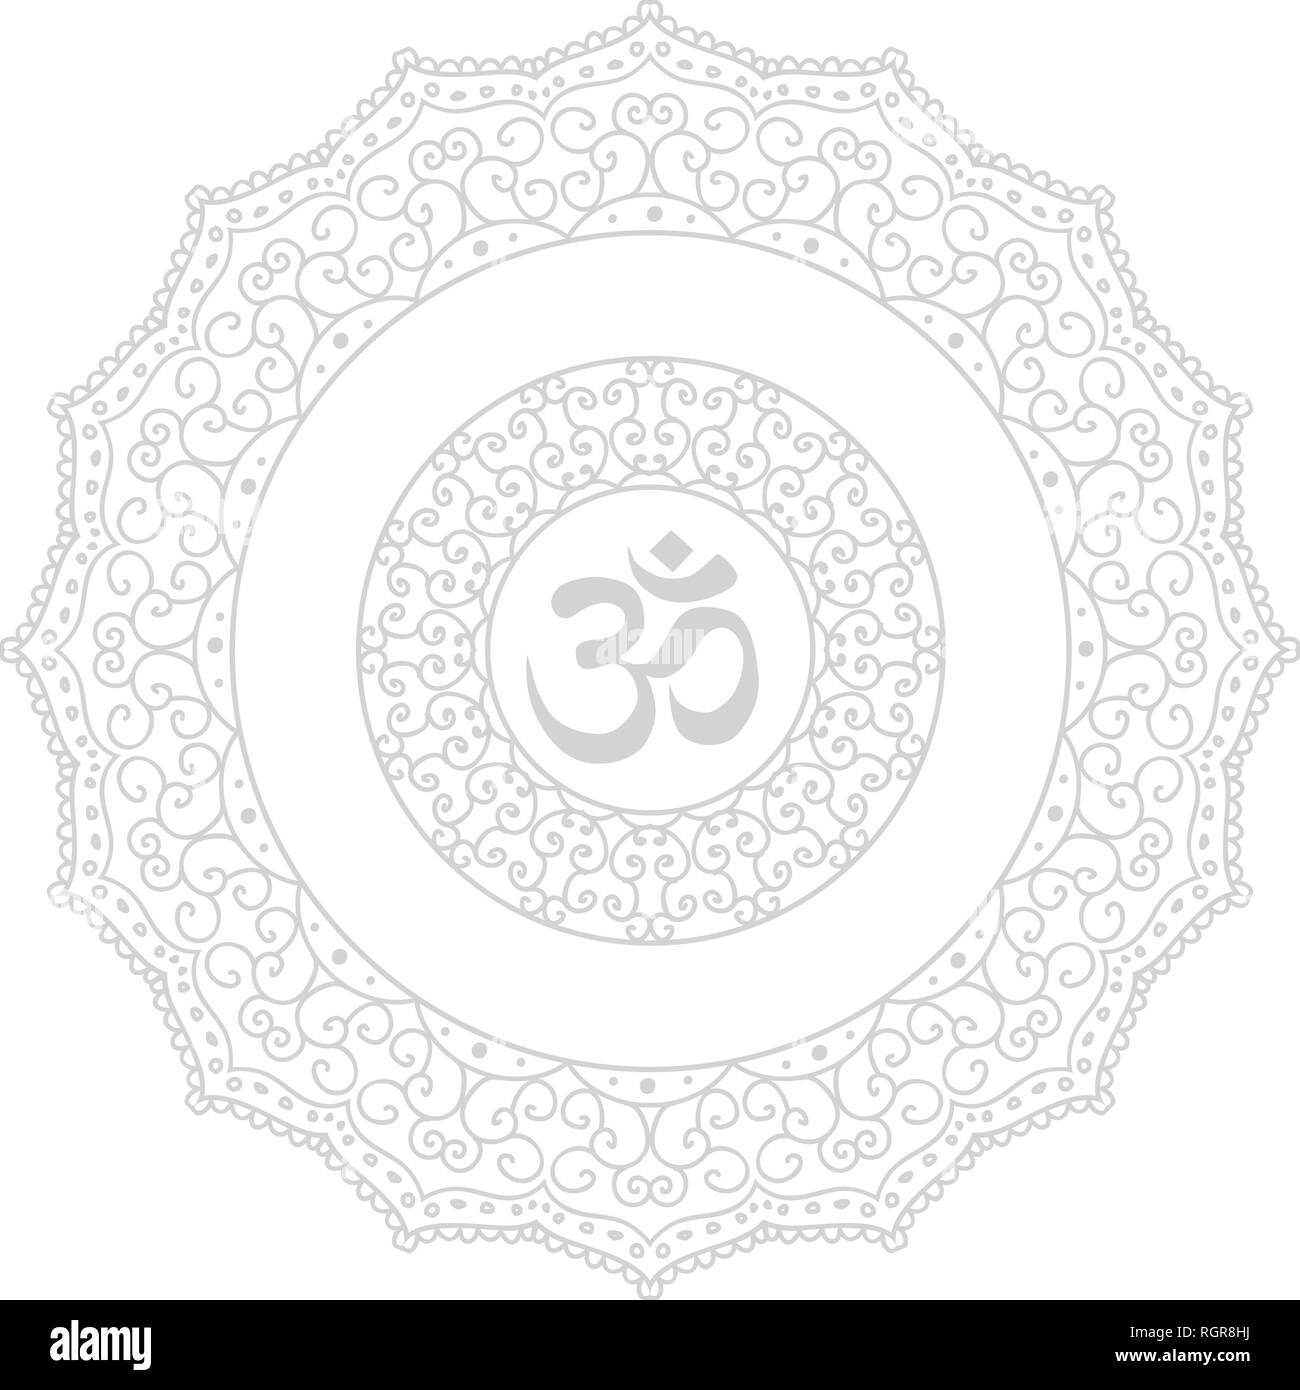 Mandala. La figure circulaire représentant l'univers en logo hindoue et bouddhiste. Illustration de Vecteur